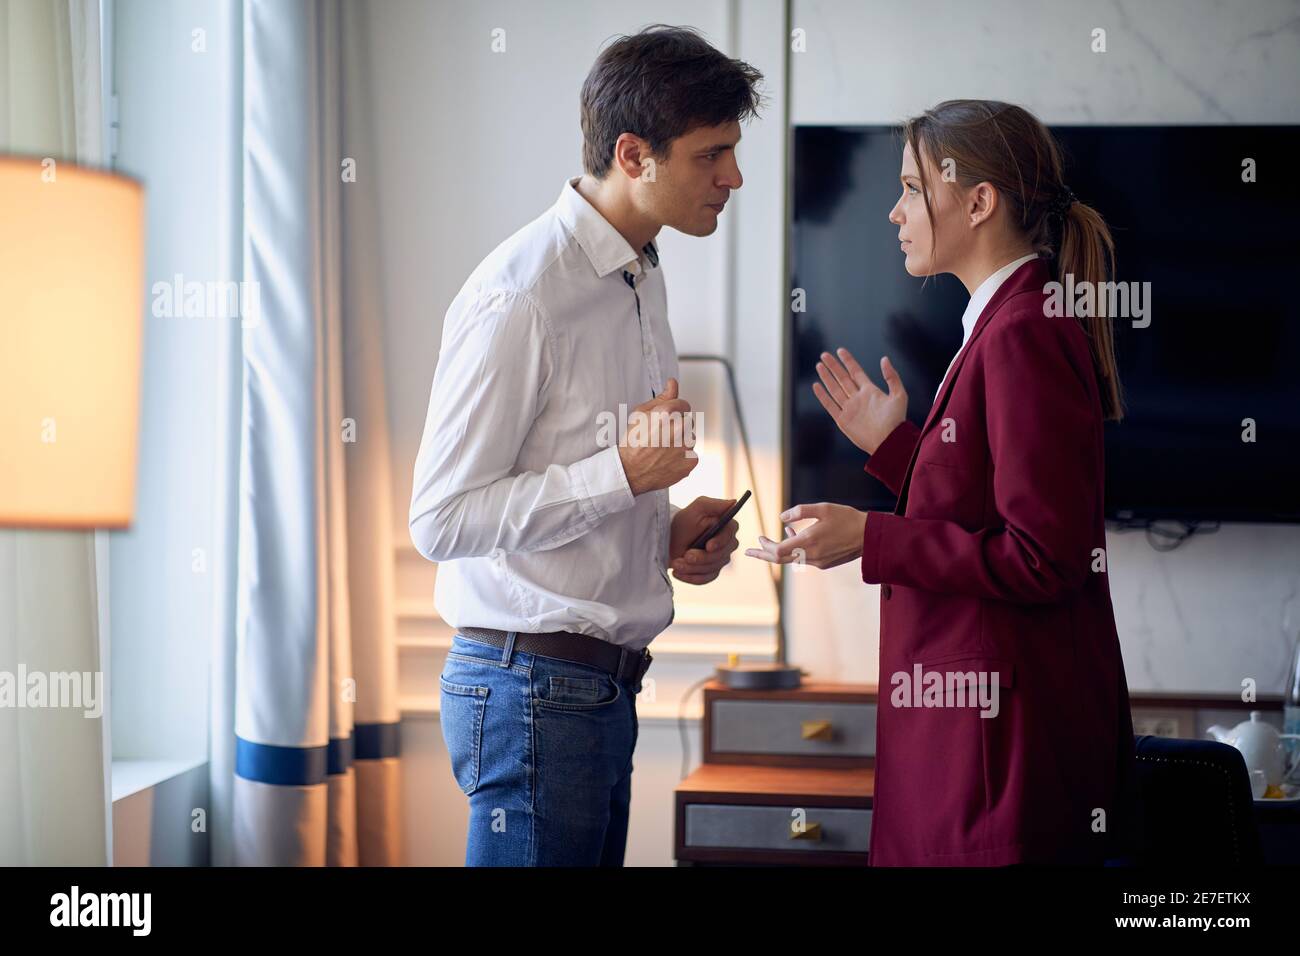 Un jeune couple dans la chambre d'hôtel discutant de problèmes lors de son voyage d'affaires pour une nouvelle affaire. Hôtel, affaires, personnes Banque D'Images